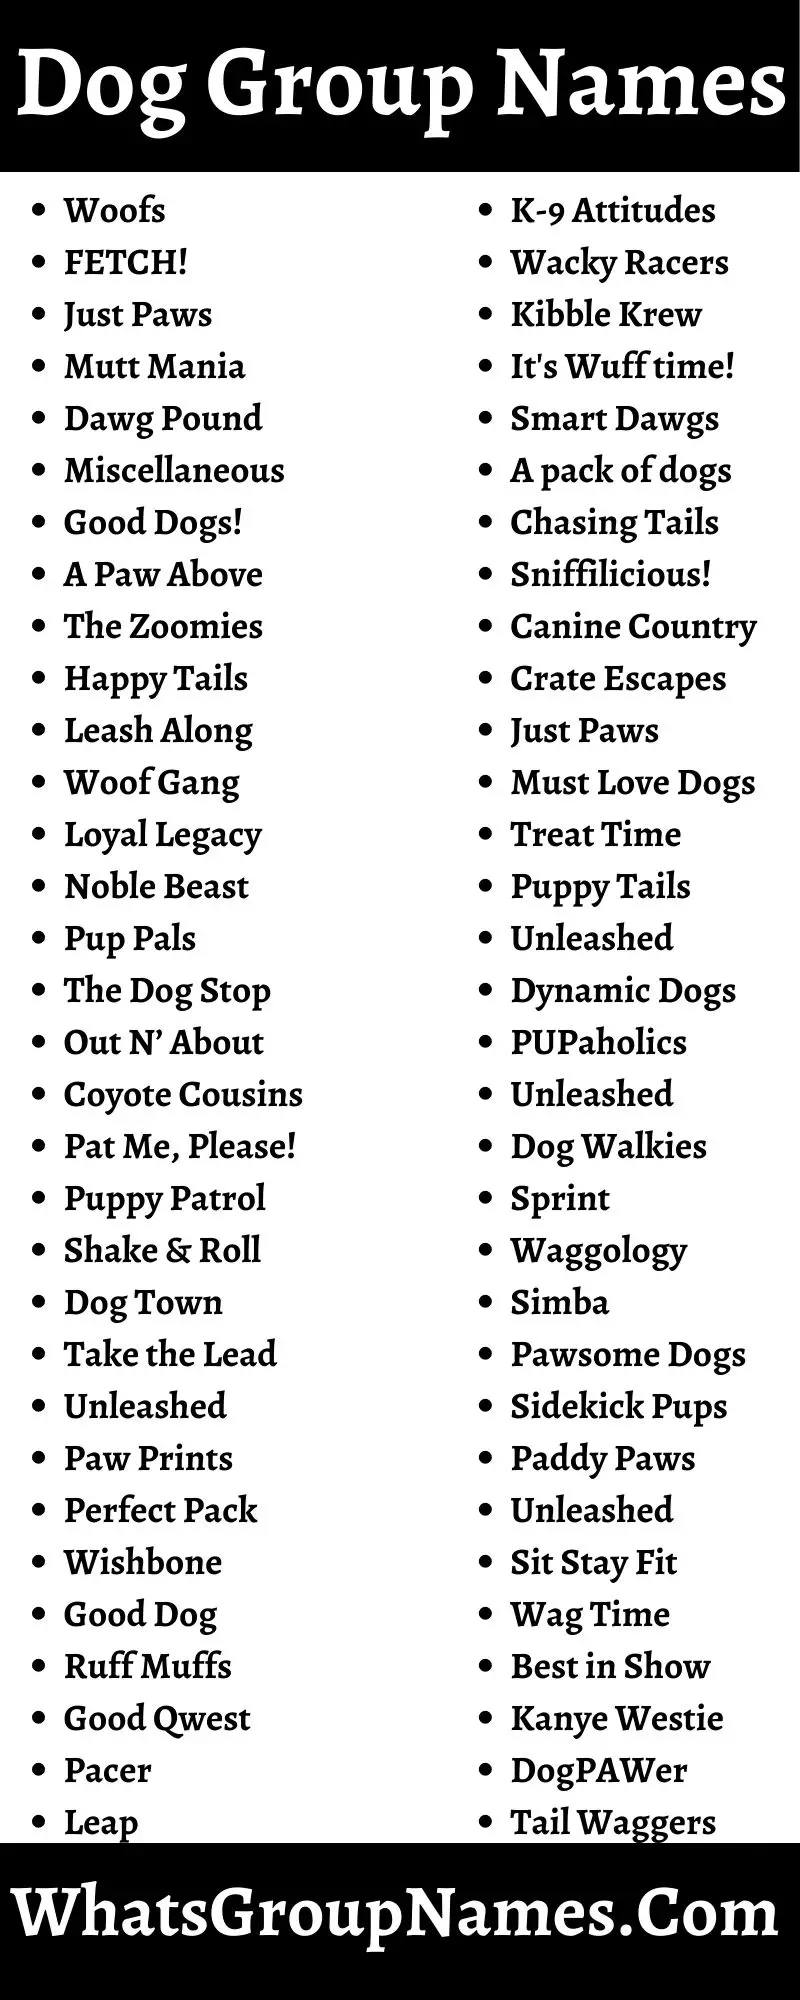 Dog Group Names